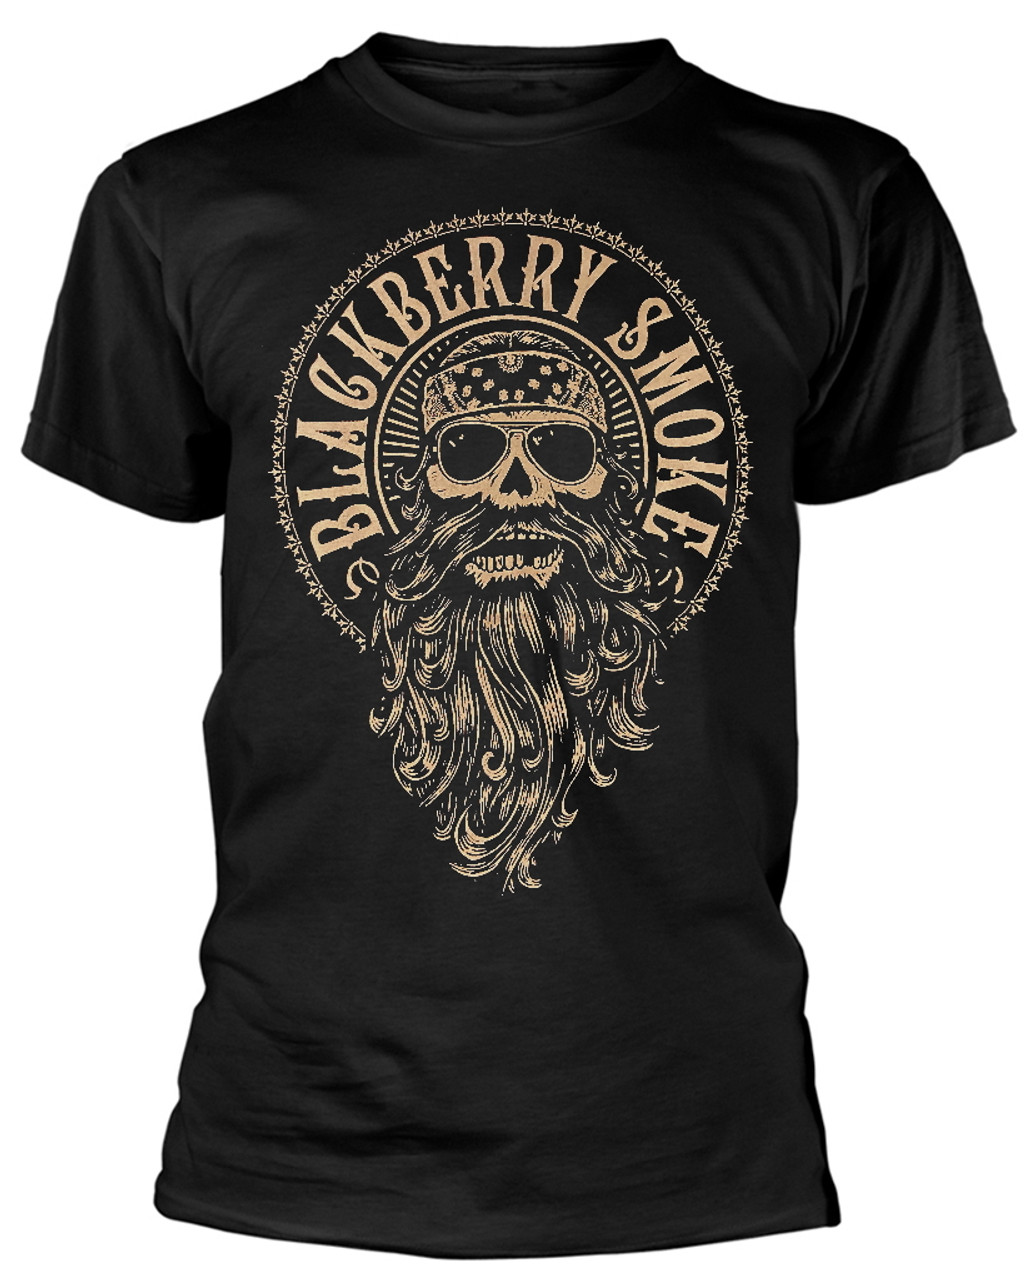 Blackberry Smoke 'Beard' (Black) T-Shirt